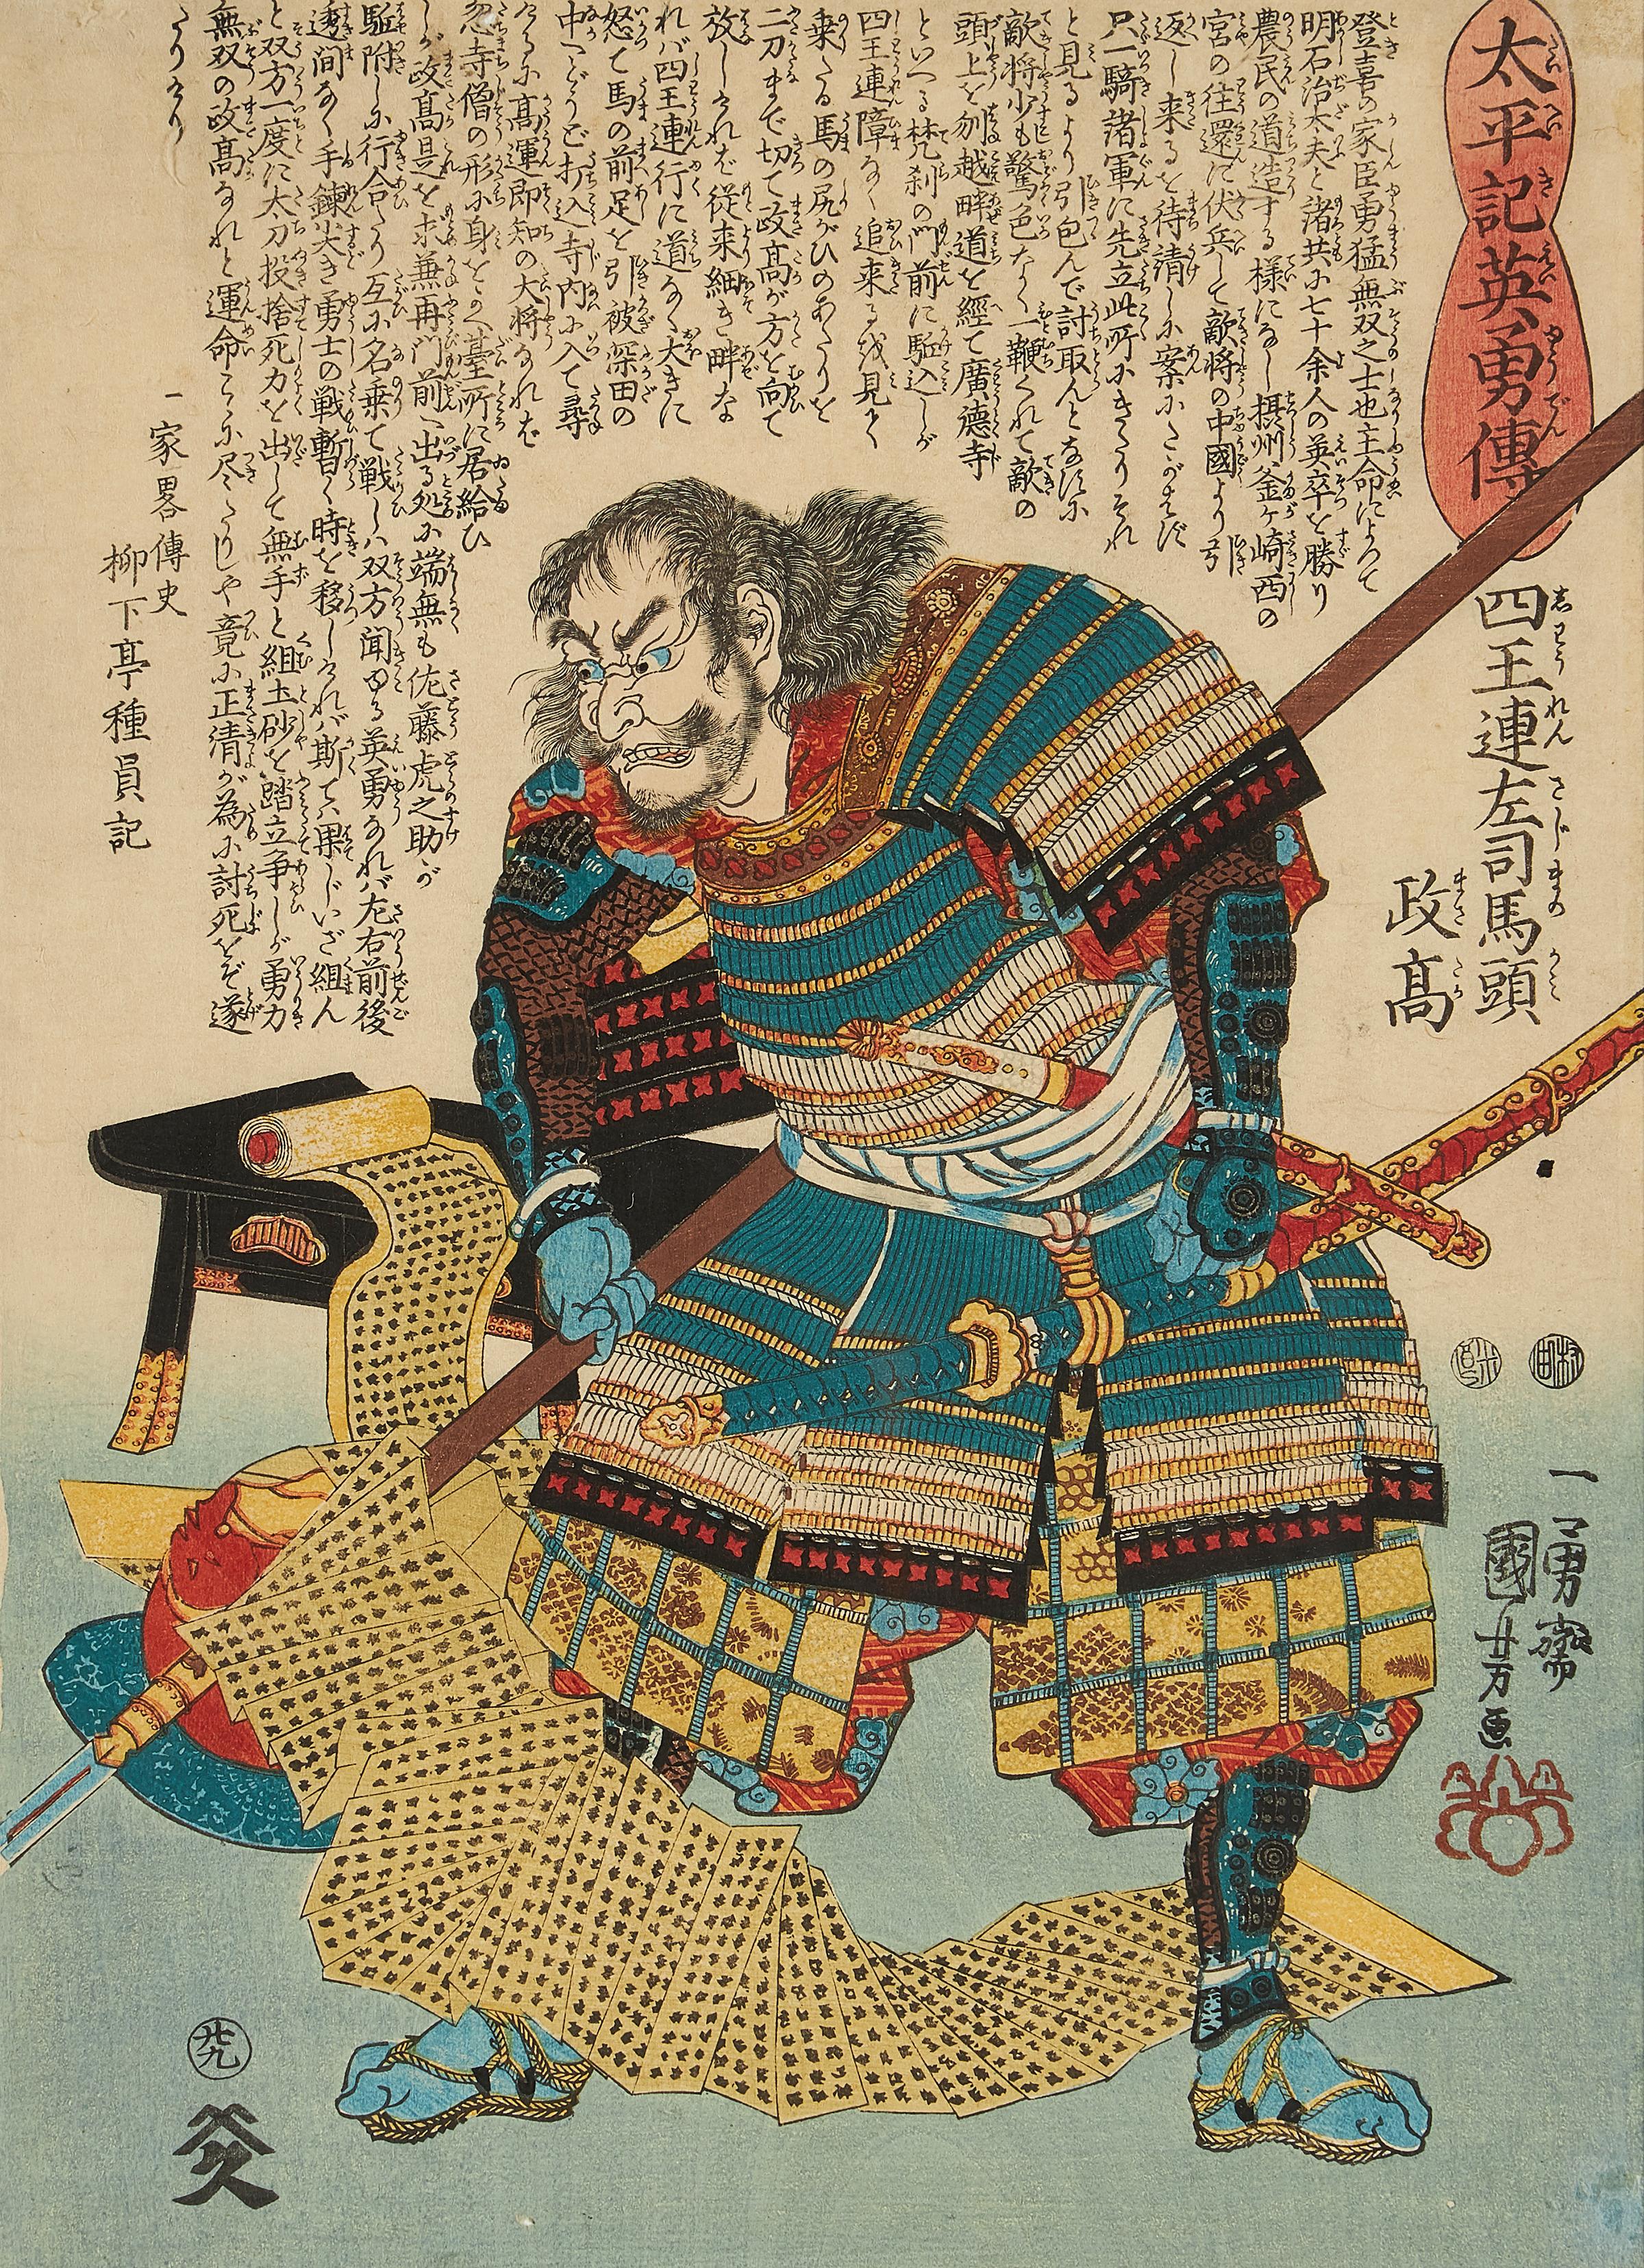 Utagawa Kuniyoshi (Japan, 1798-1861), eine Serie von neun japanischen Farbholzschnitten (Ukiyo-e) aus der Serie 